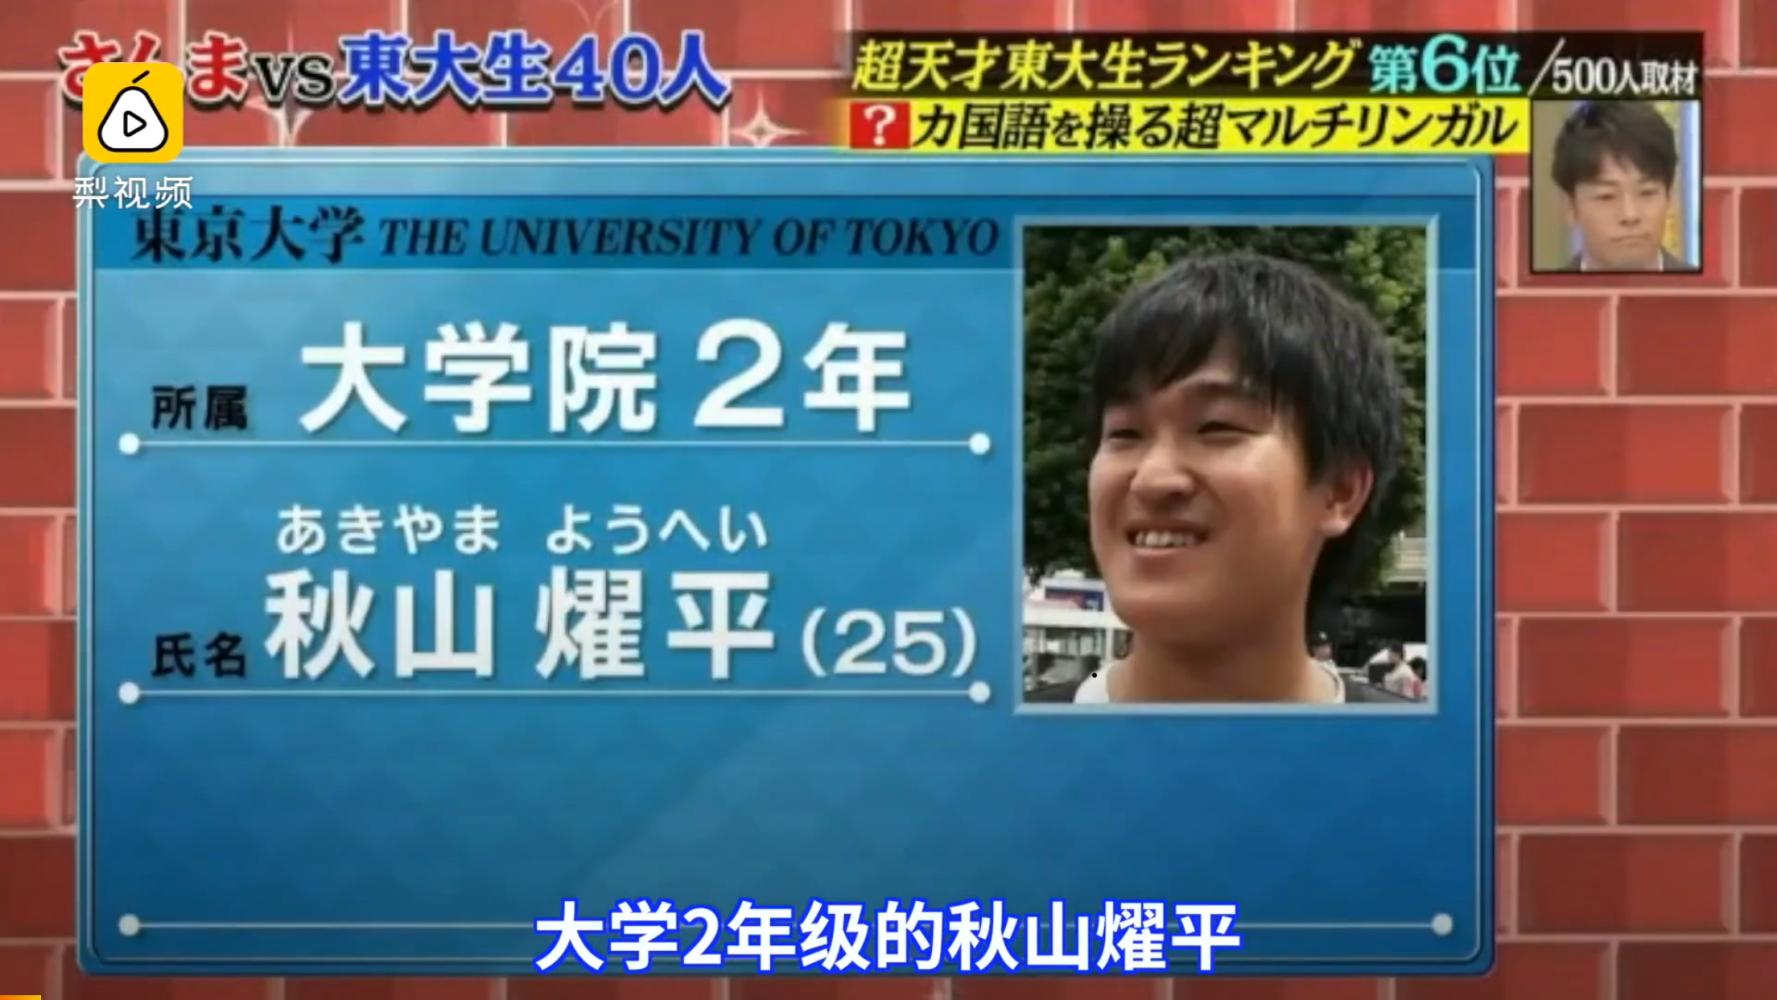 秋山燿平是一名大二的日本大学生,加上日语他竟然能说10国语言.